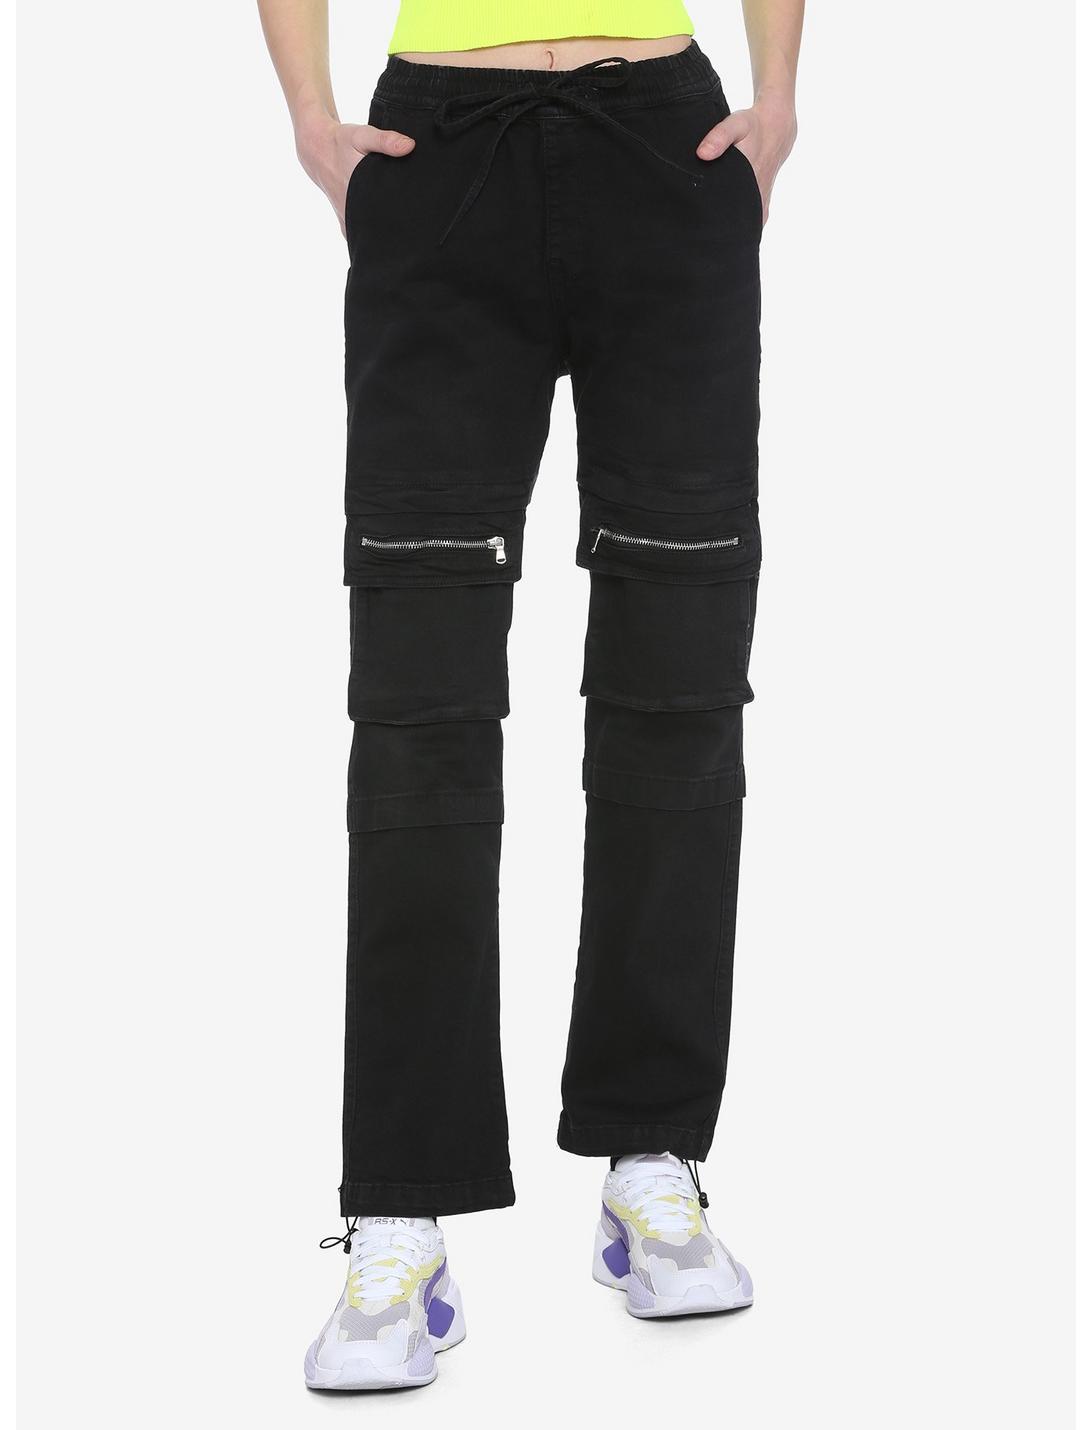 Black Zipper Pocket Jogger Pants, BLACK, hi-res